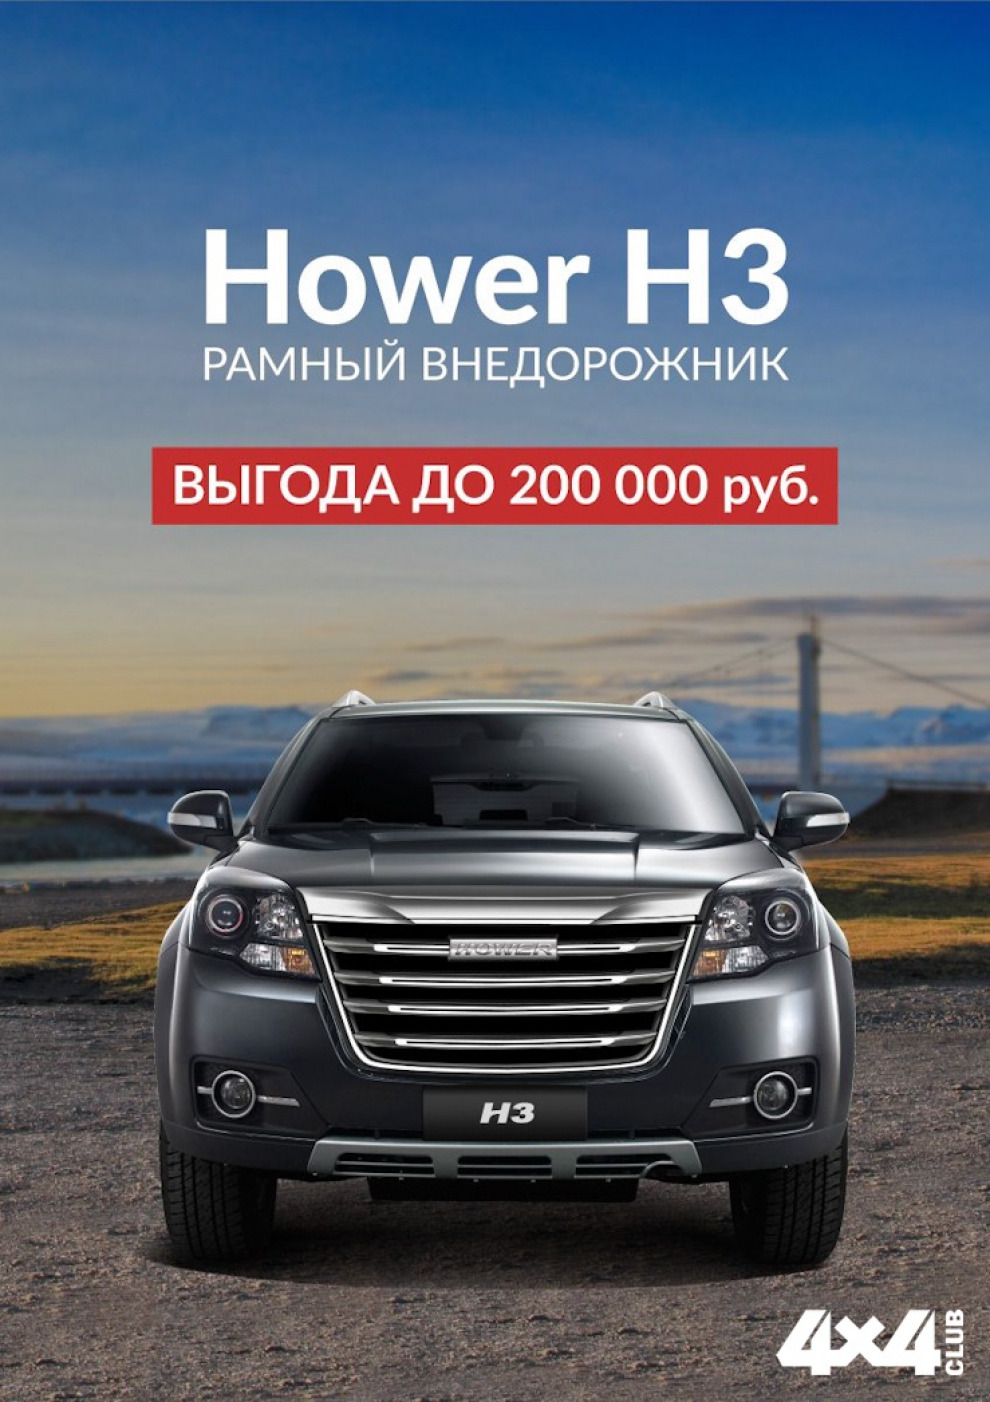 Старт акции «Выгода до 200 000 рублей!» при покупке Hower H3